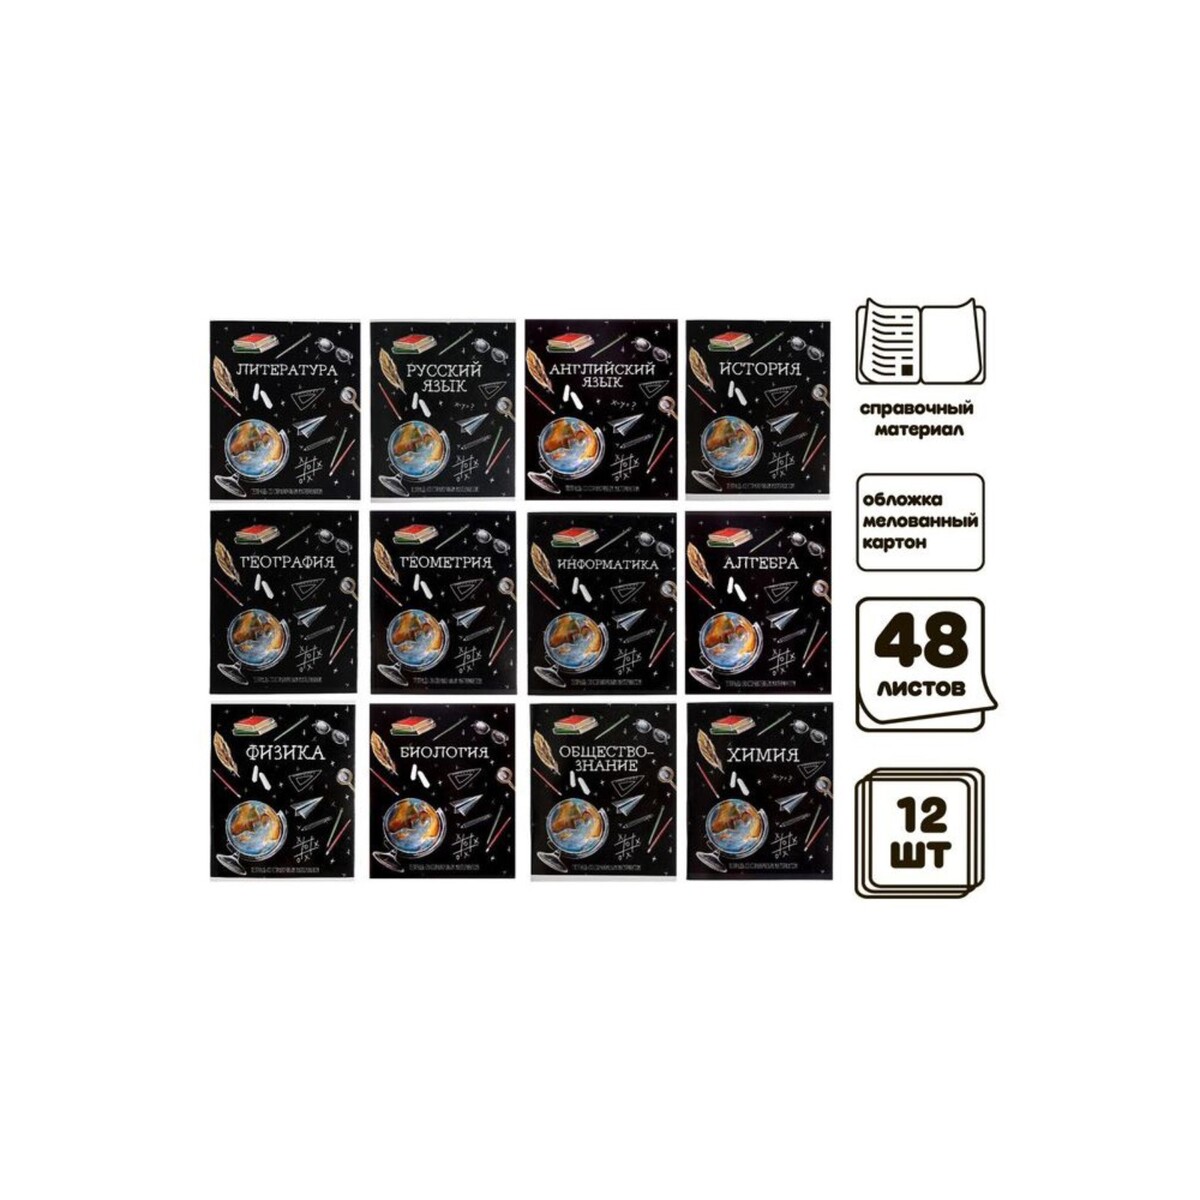 Комплект предметных тетрадей 48 листов 404328 тетради предметные со справочным материалом комплект 10 предметов original 48 л twin лак brauberg 404328